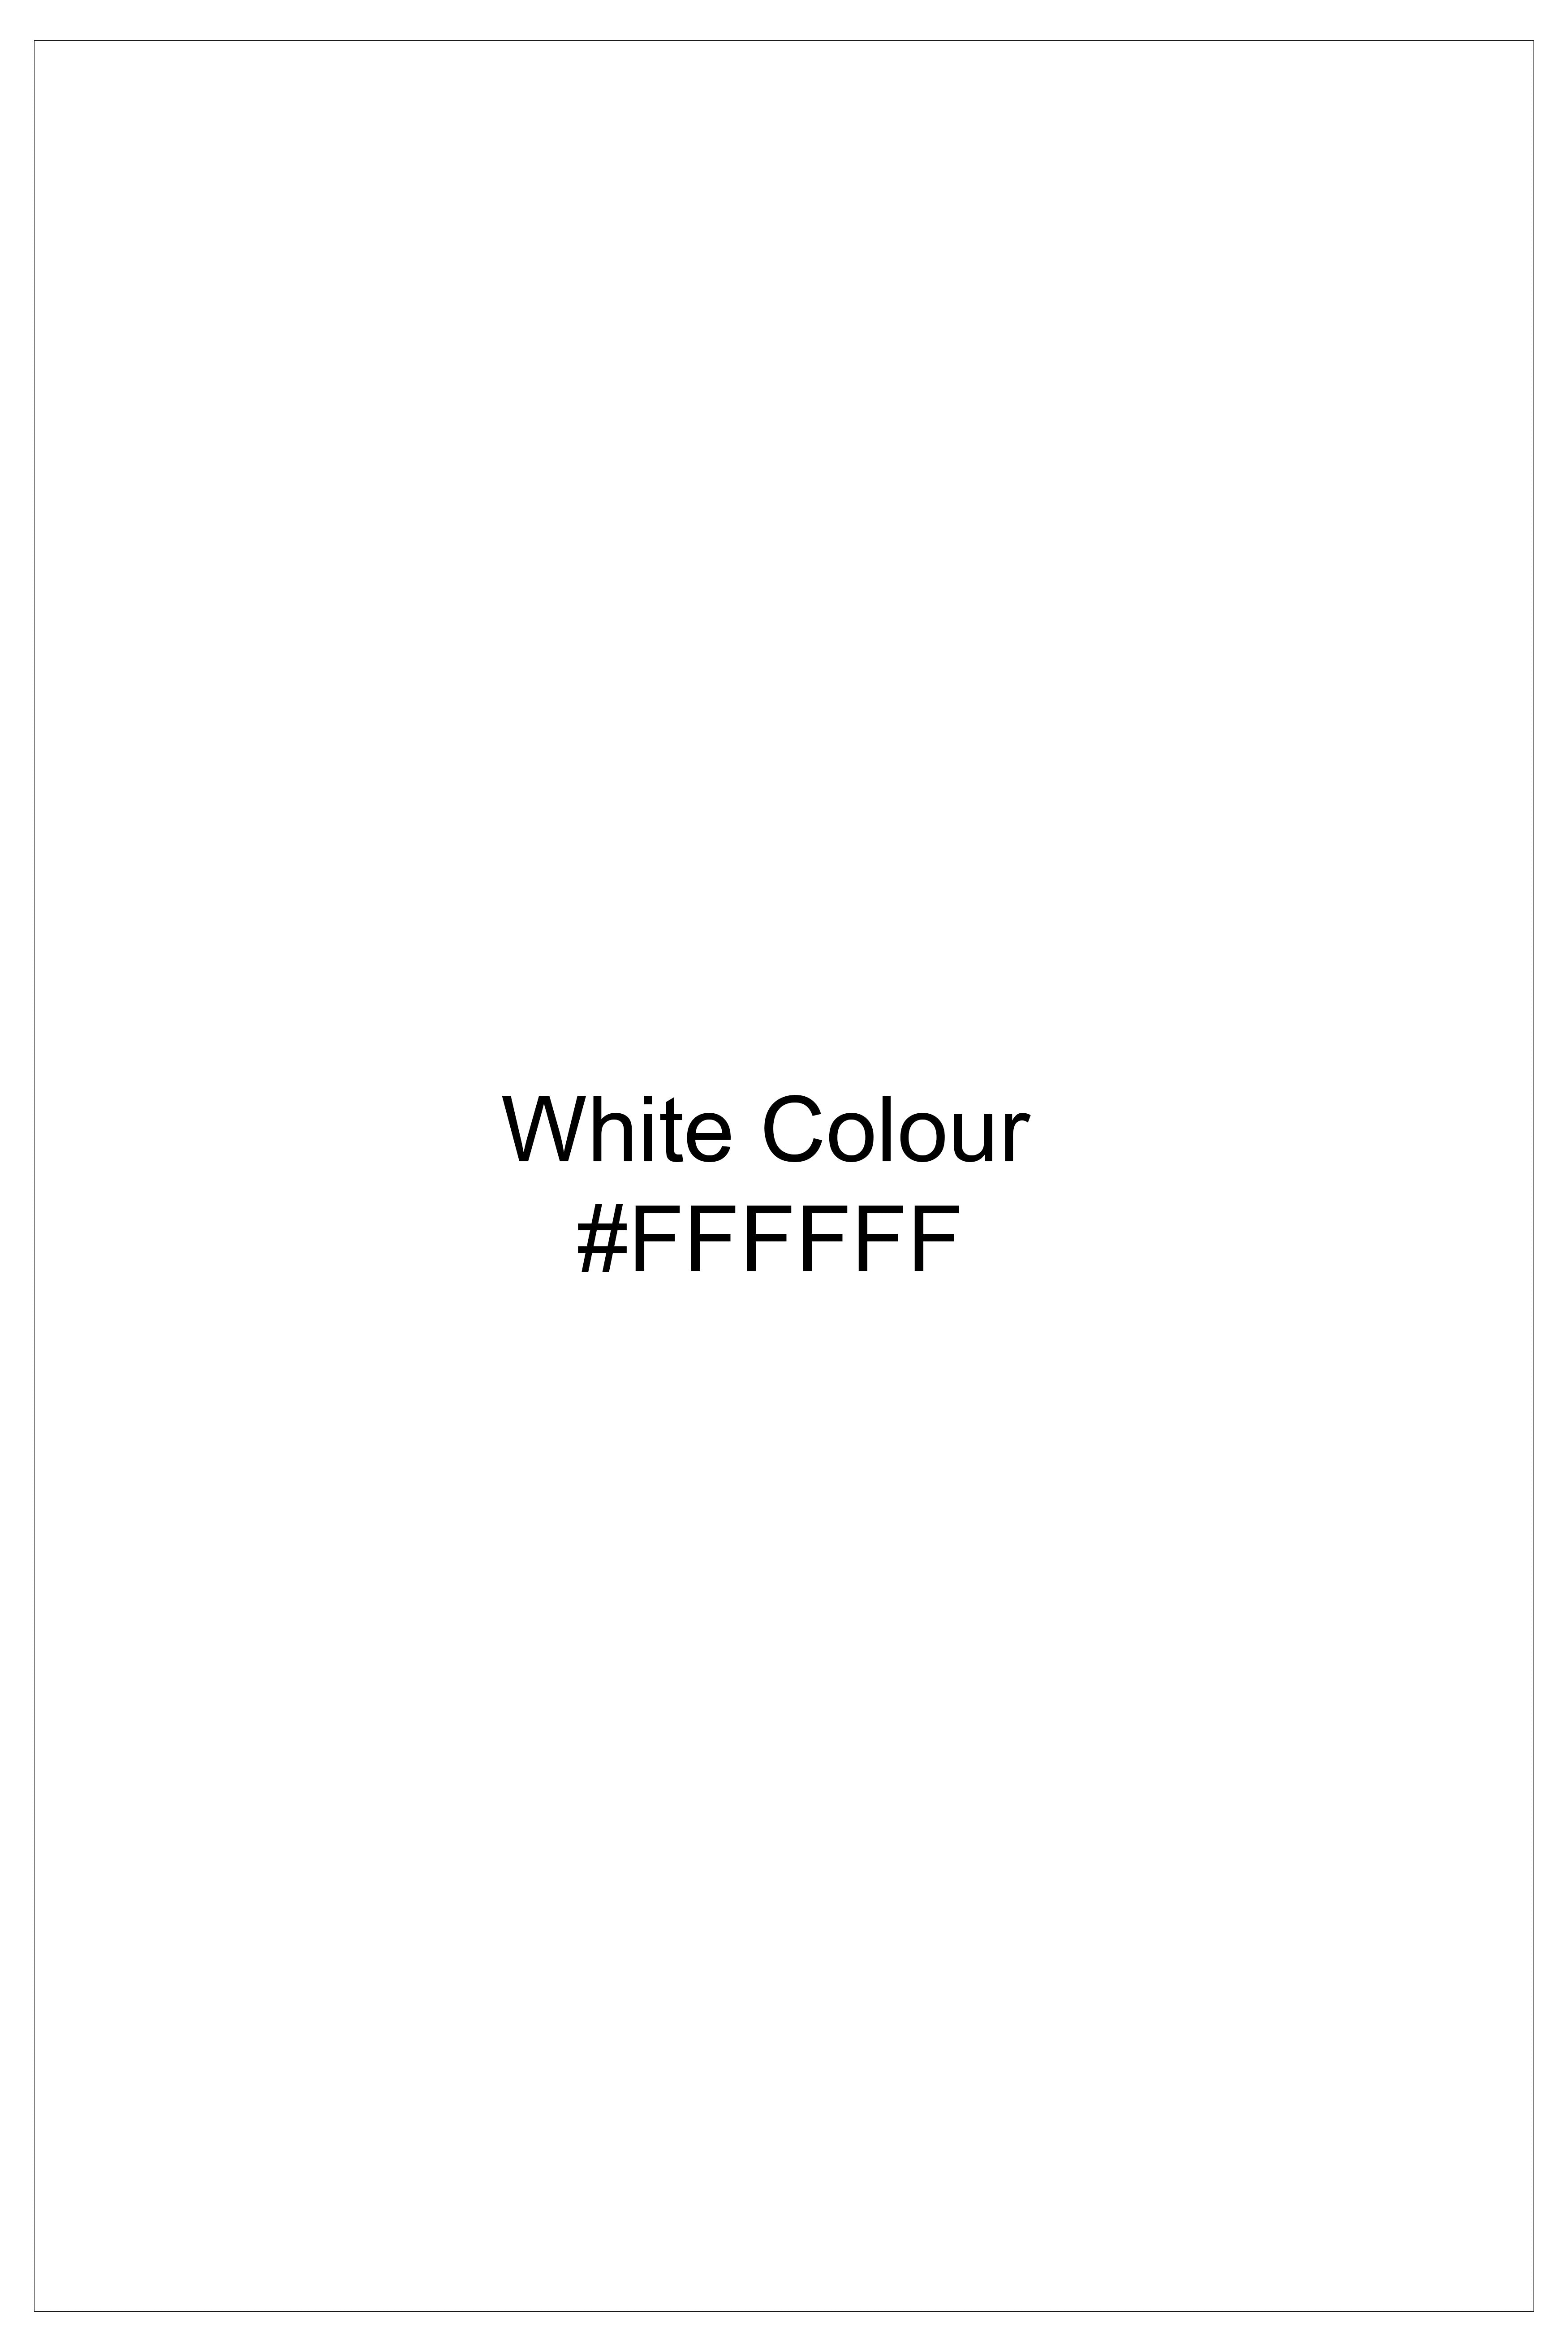 Bright White Textured Premium Cotton Pique Polo